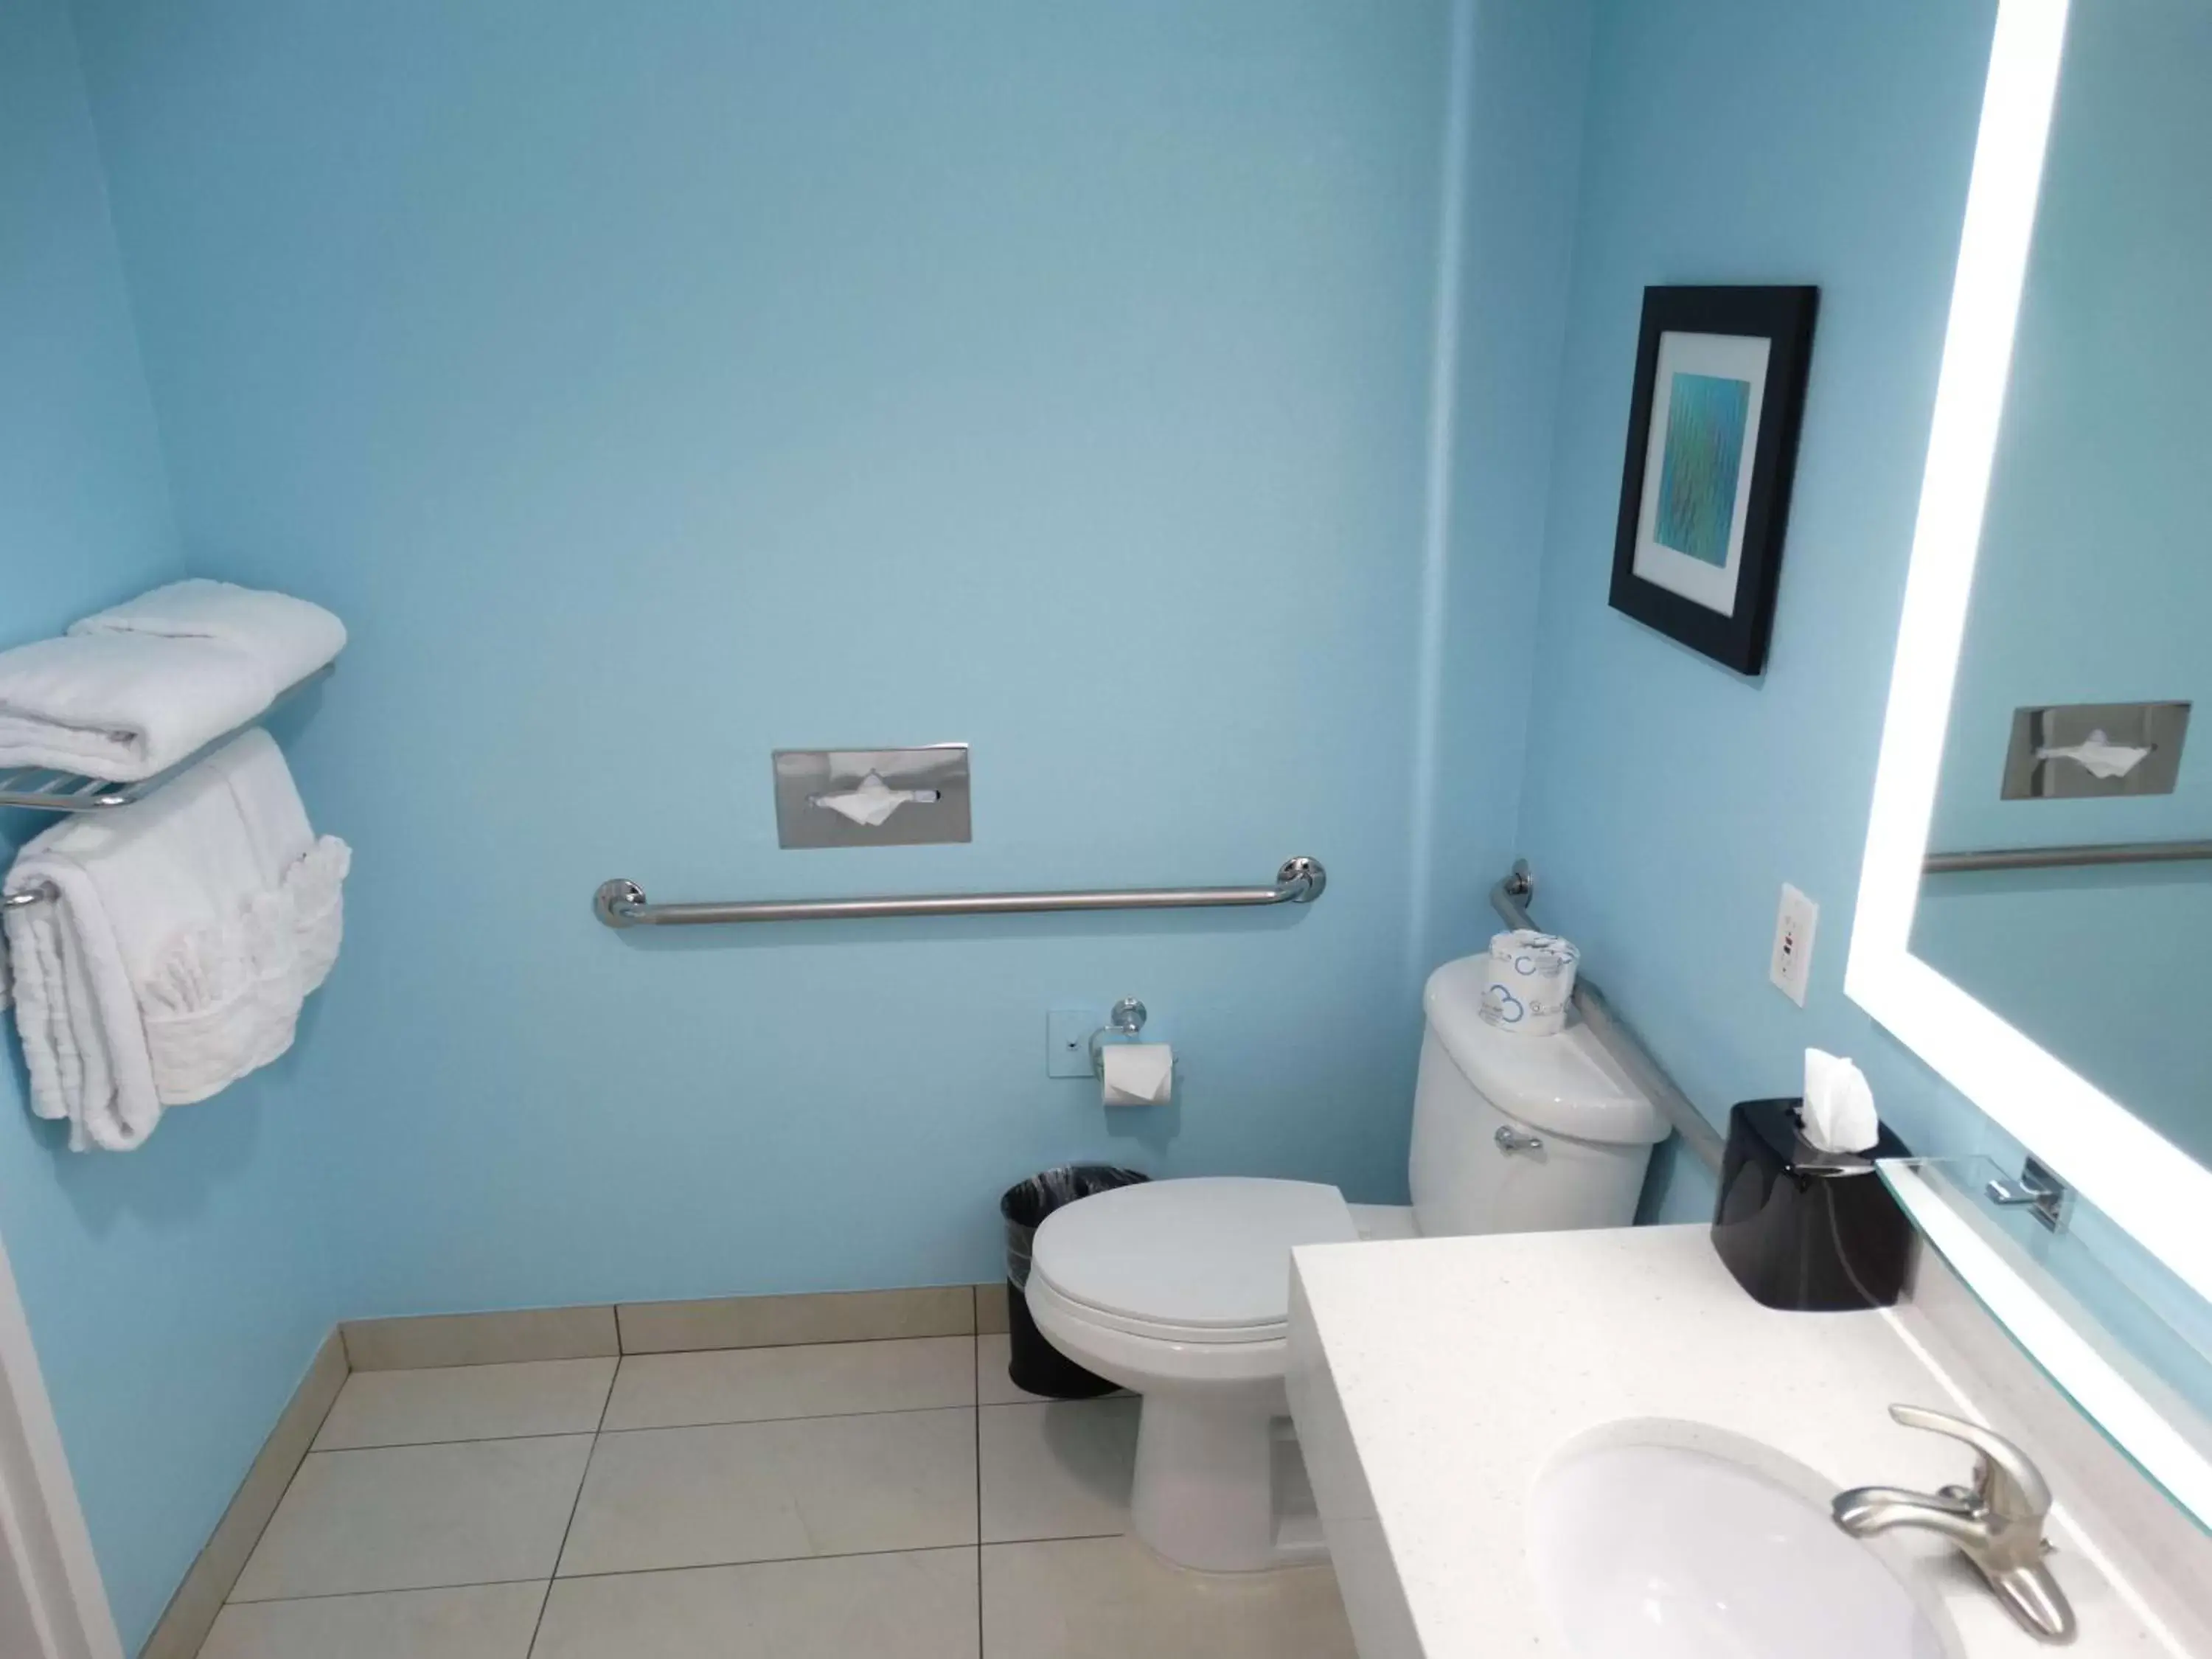 Bathroom in Best Western Plus Kissimmee-Lake Buena Vista South Inn & Suites